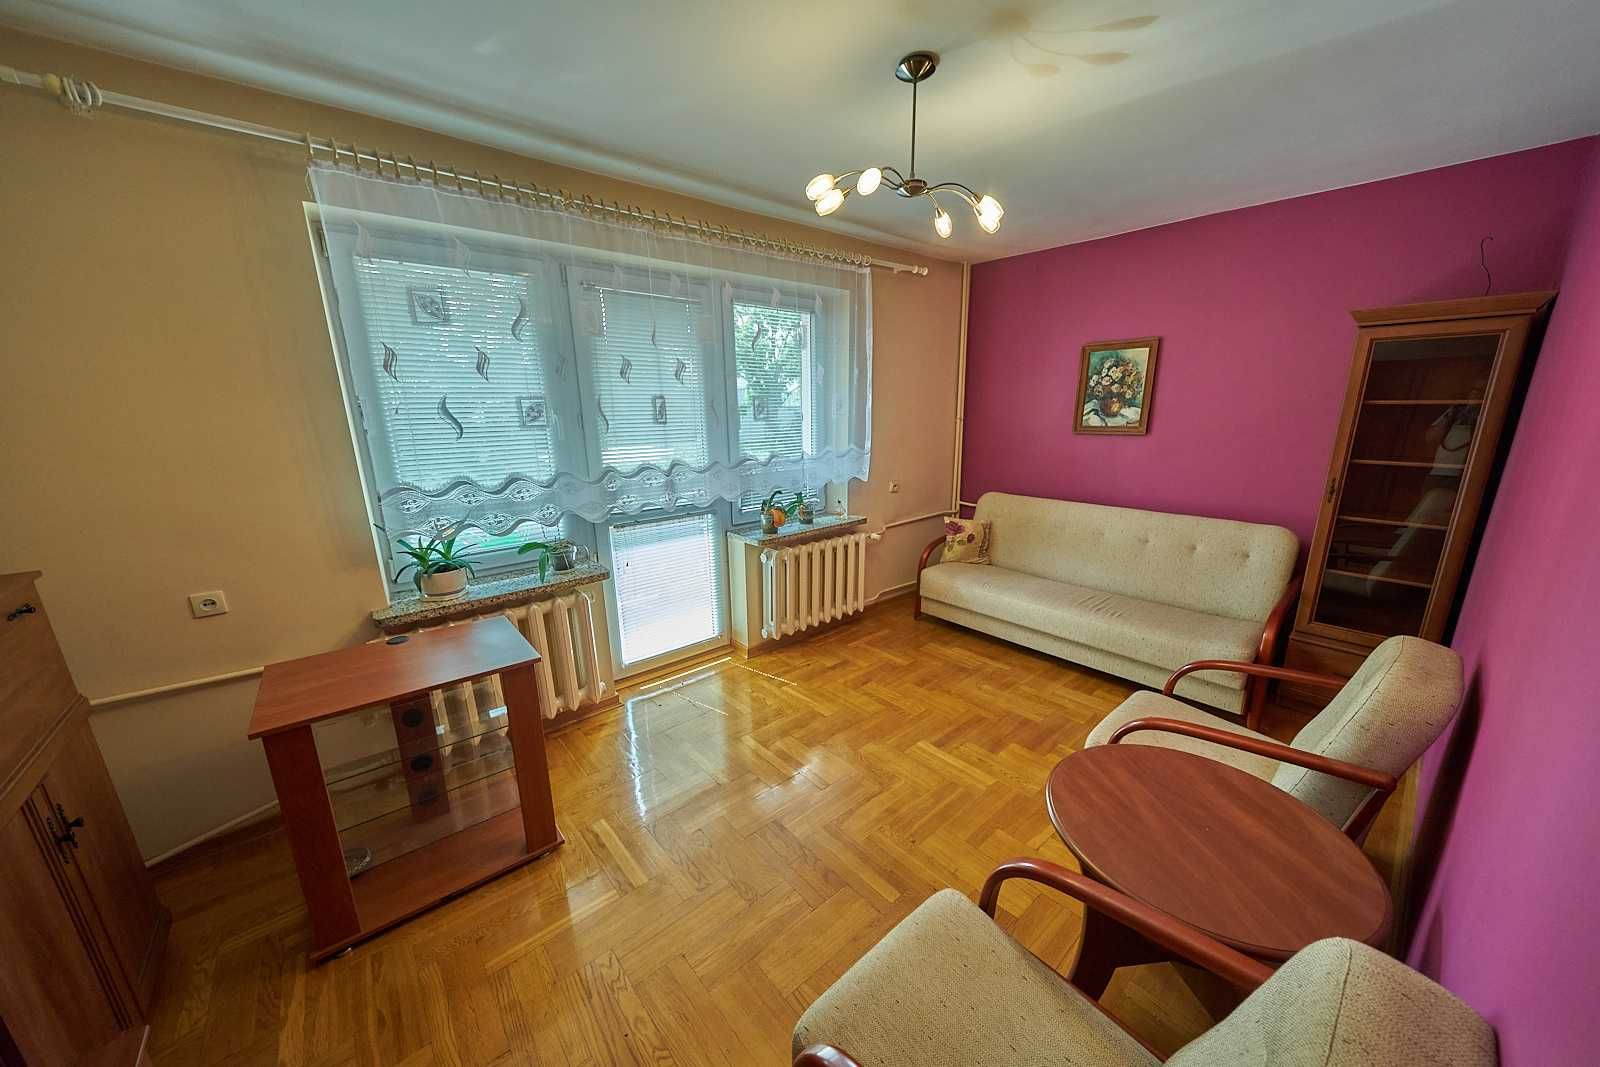 Lublin, LSM duże mieszkanie 85 m2 3-pokojowe